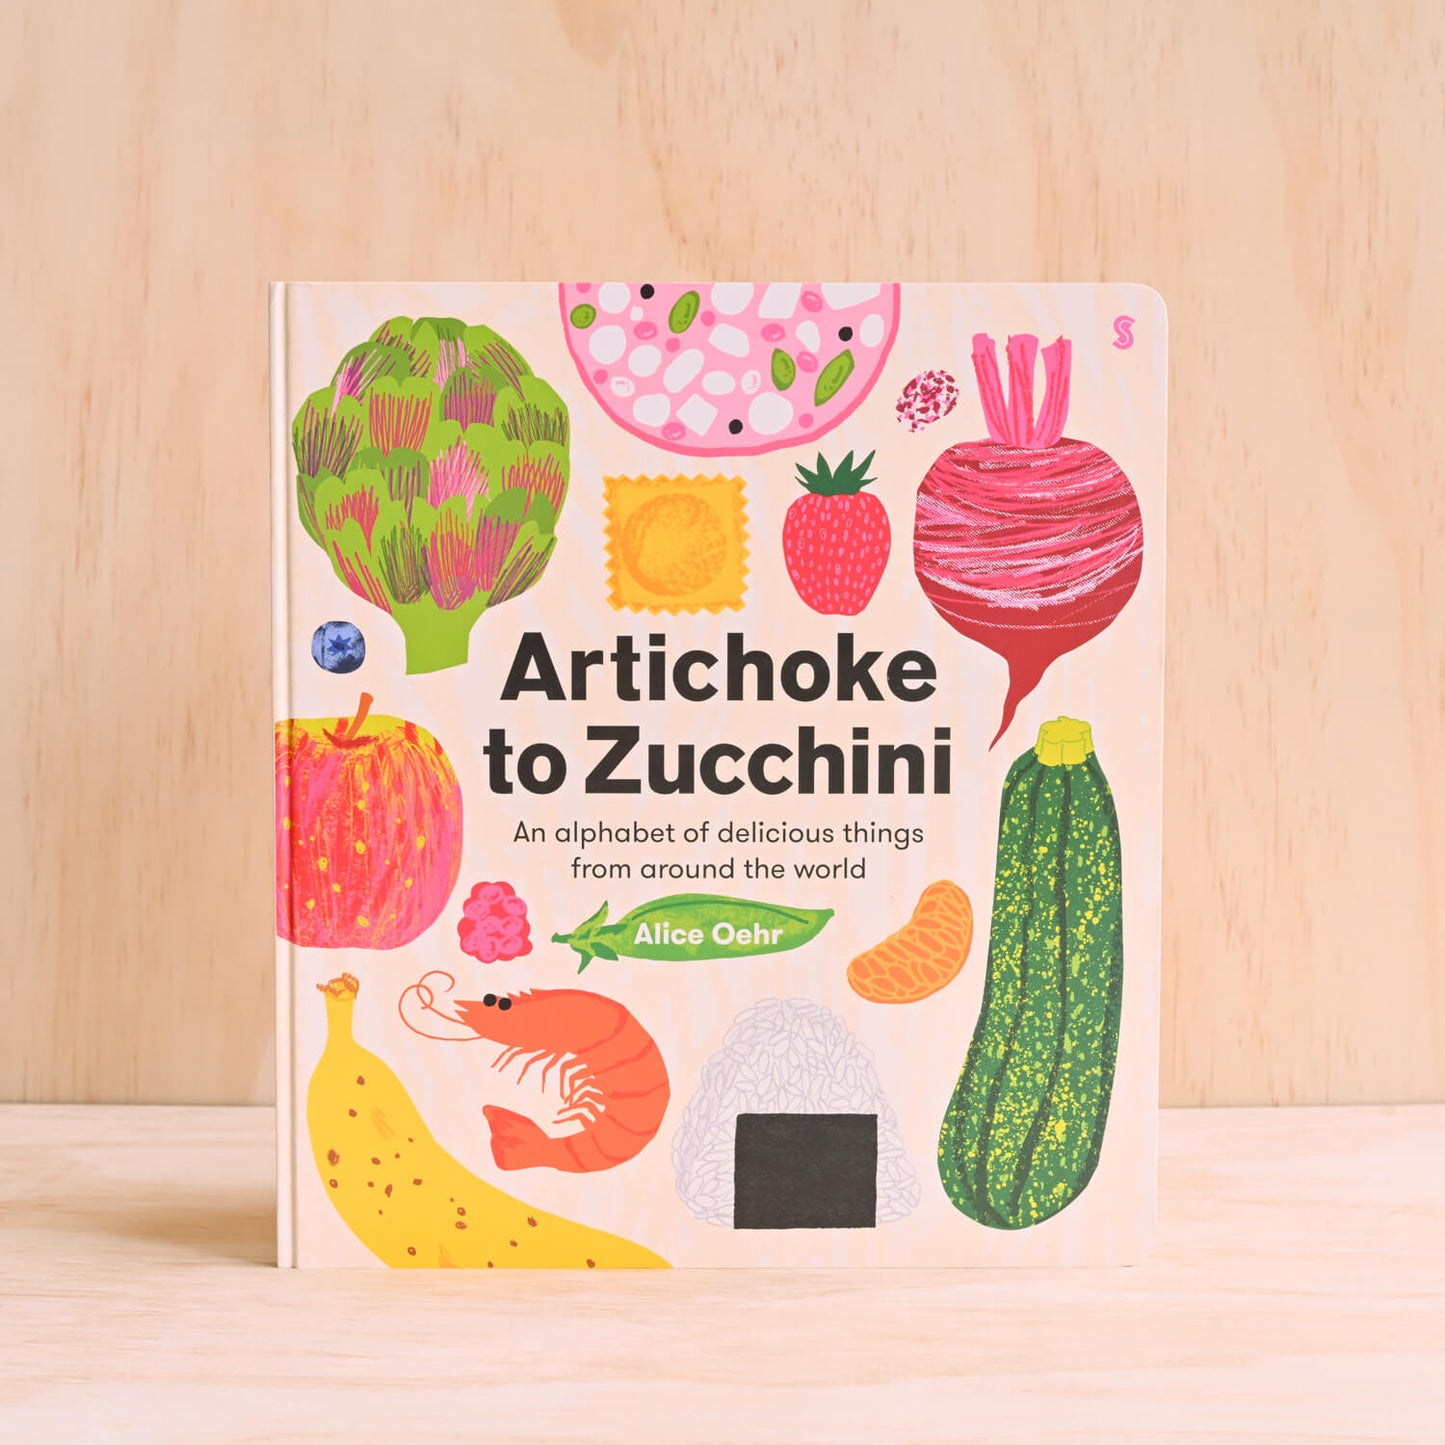 Artichoke to Zucchini, by Alice Oehr